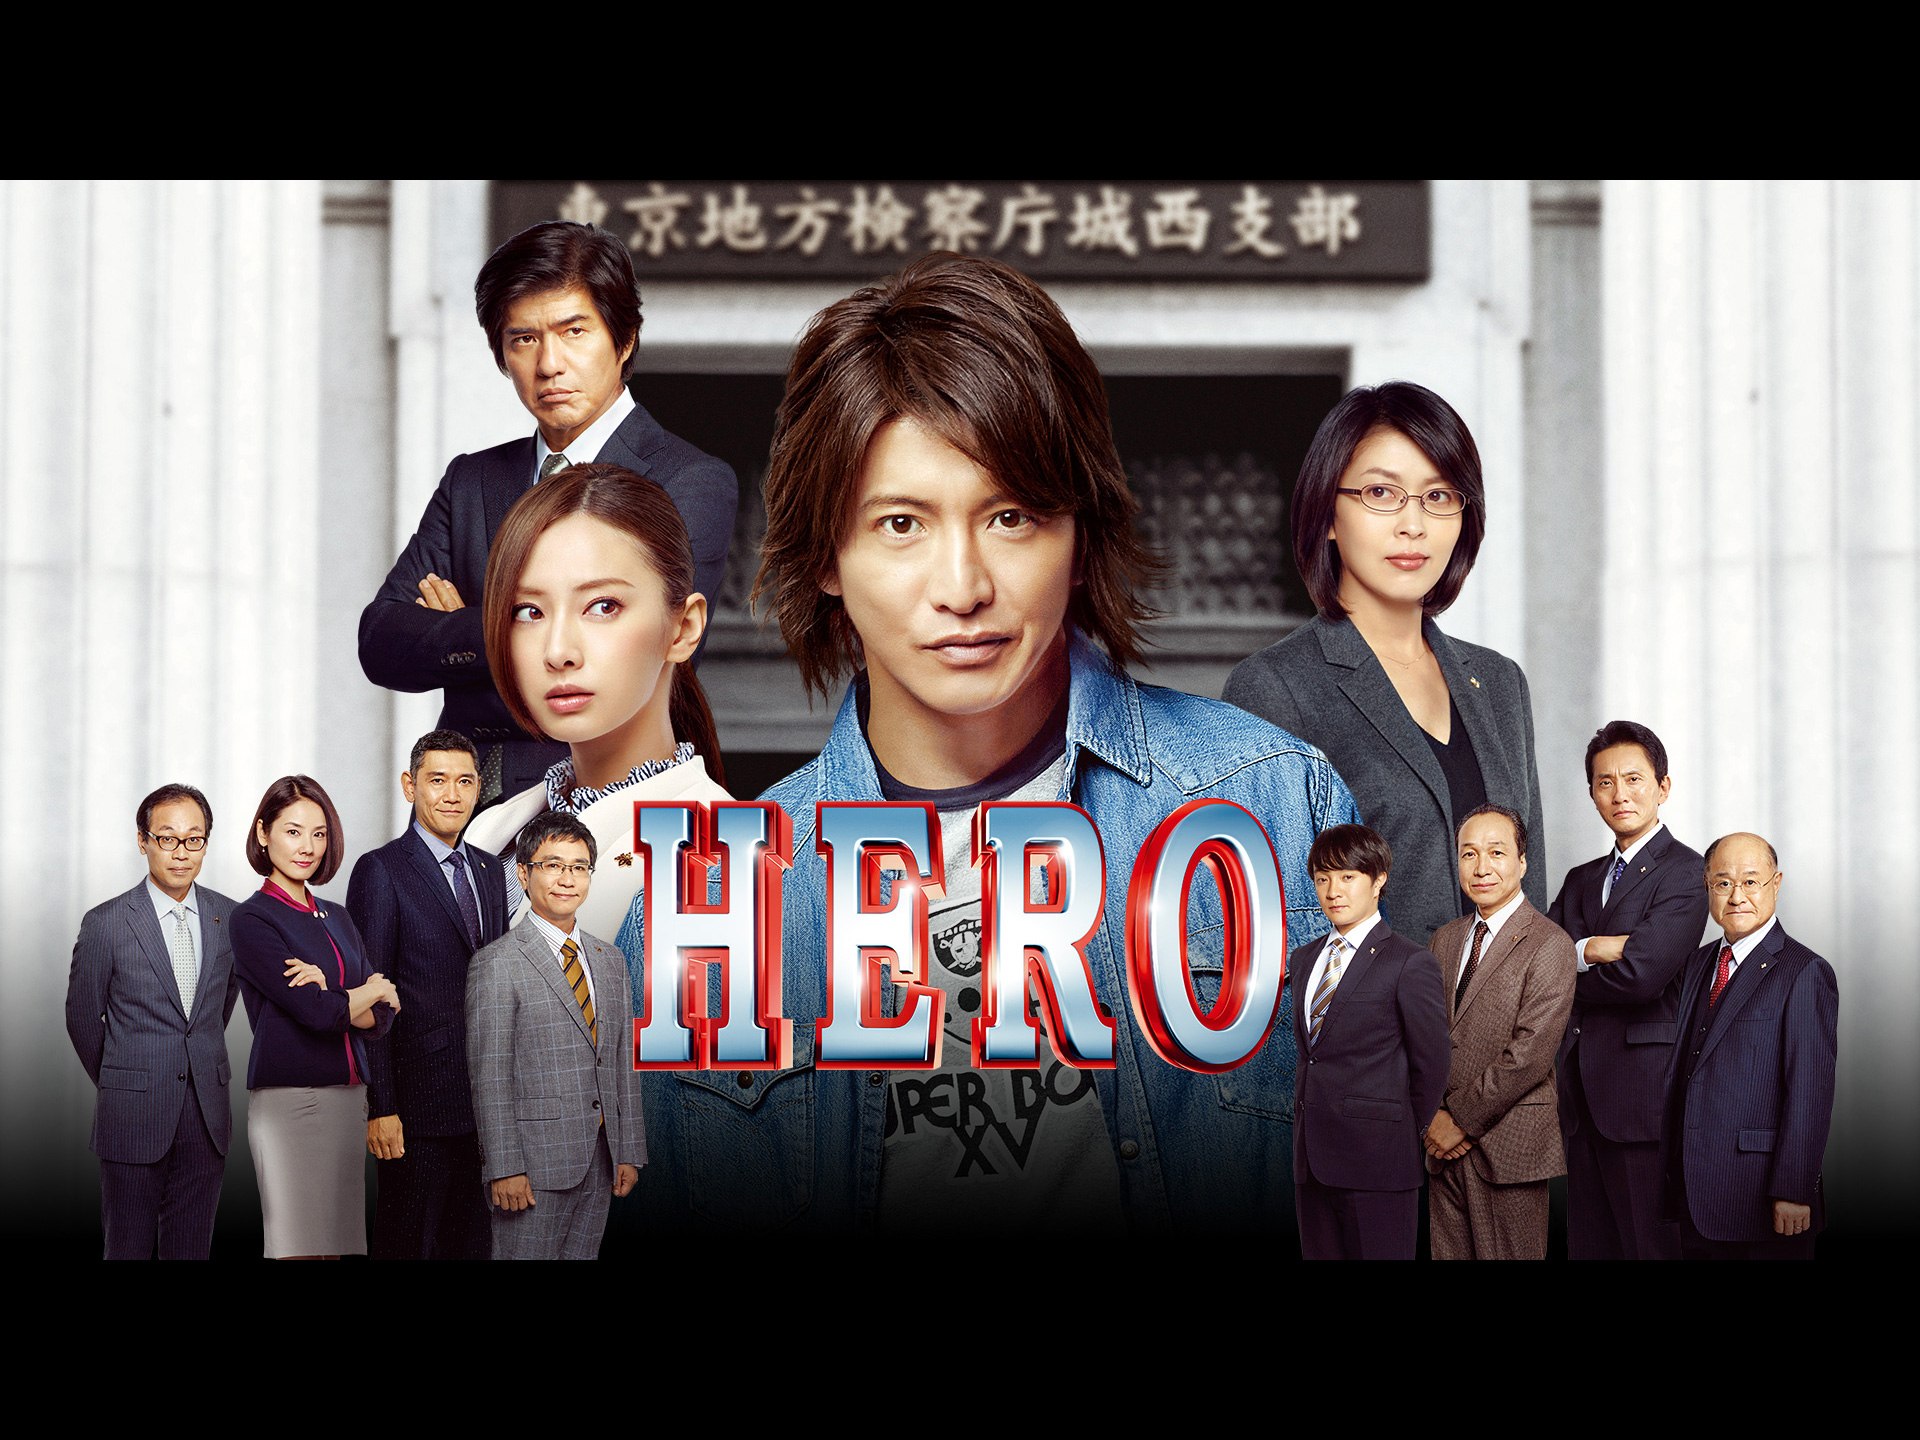 無料視聴あり 映画 Hero 15 の動画 初月無料 動画配信サービスのビデオマーケット